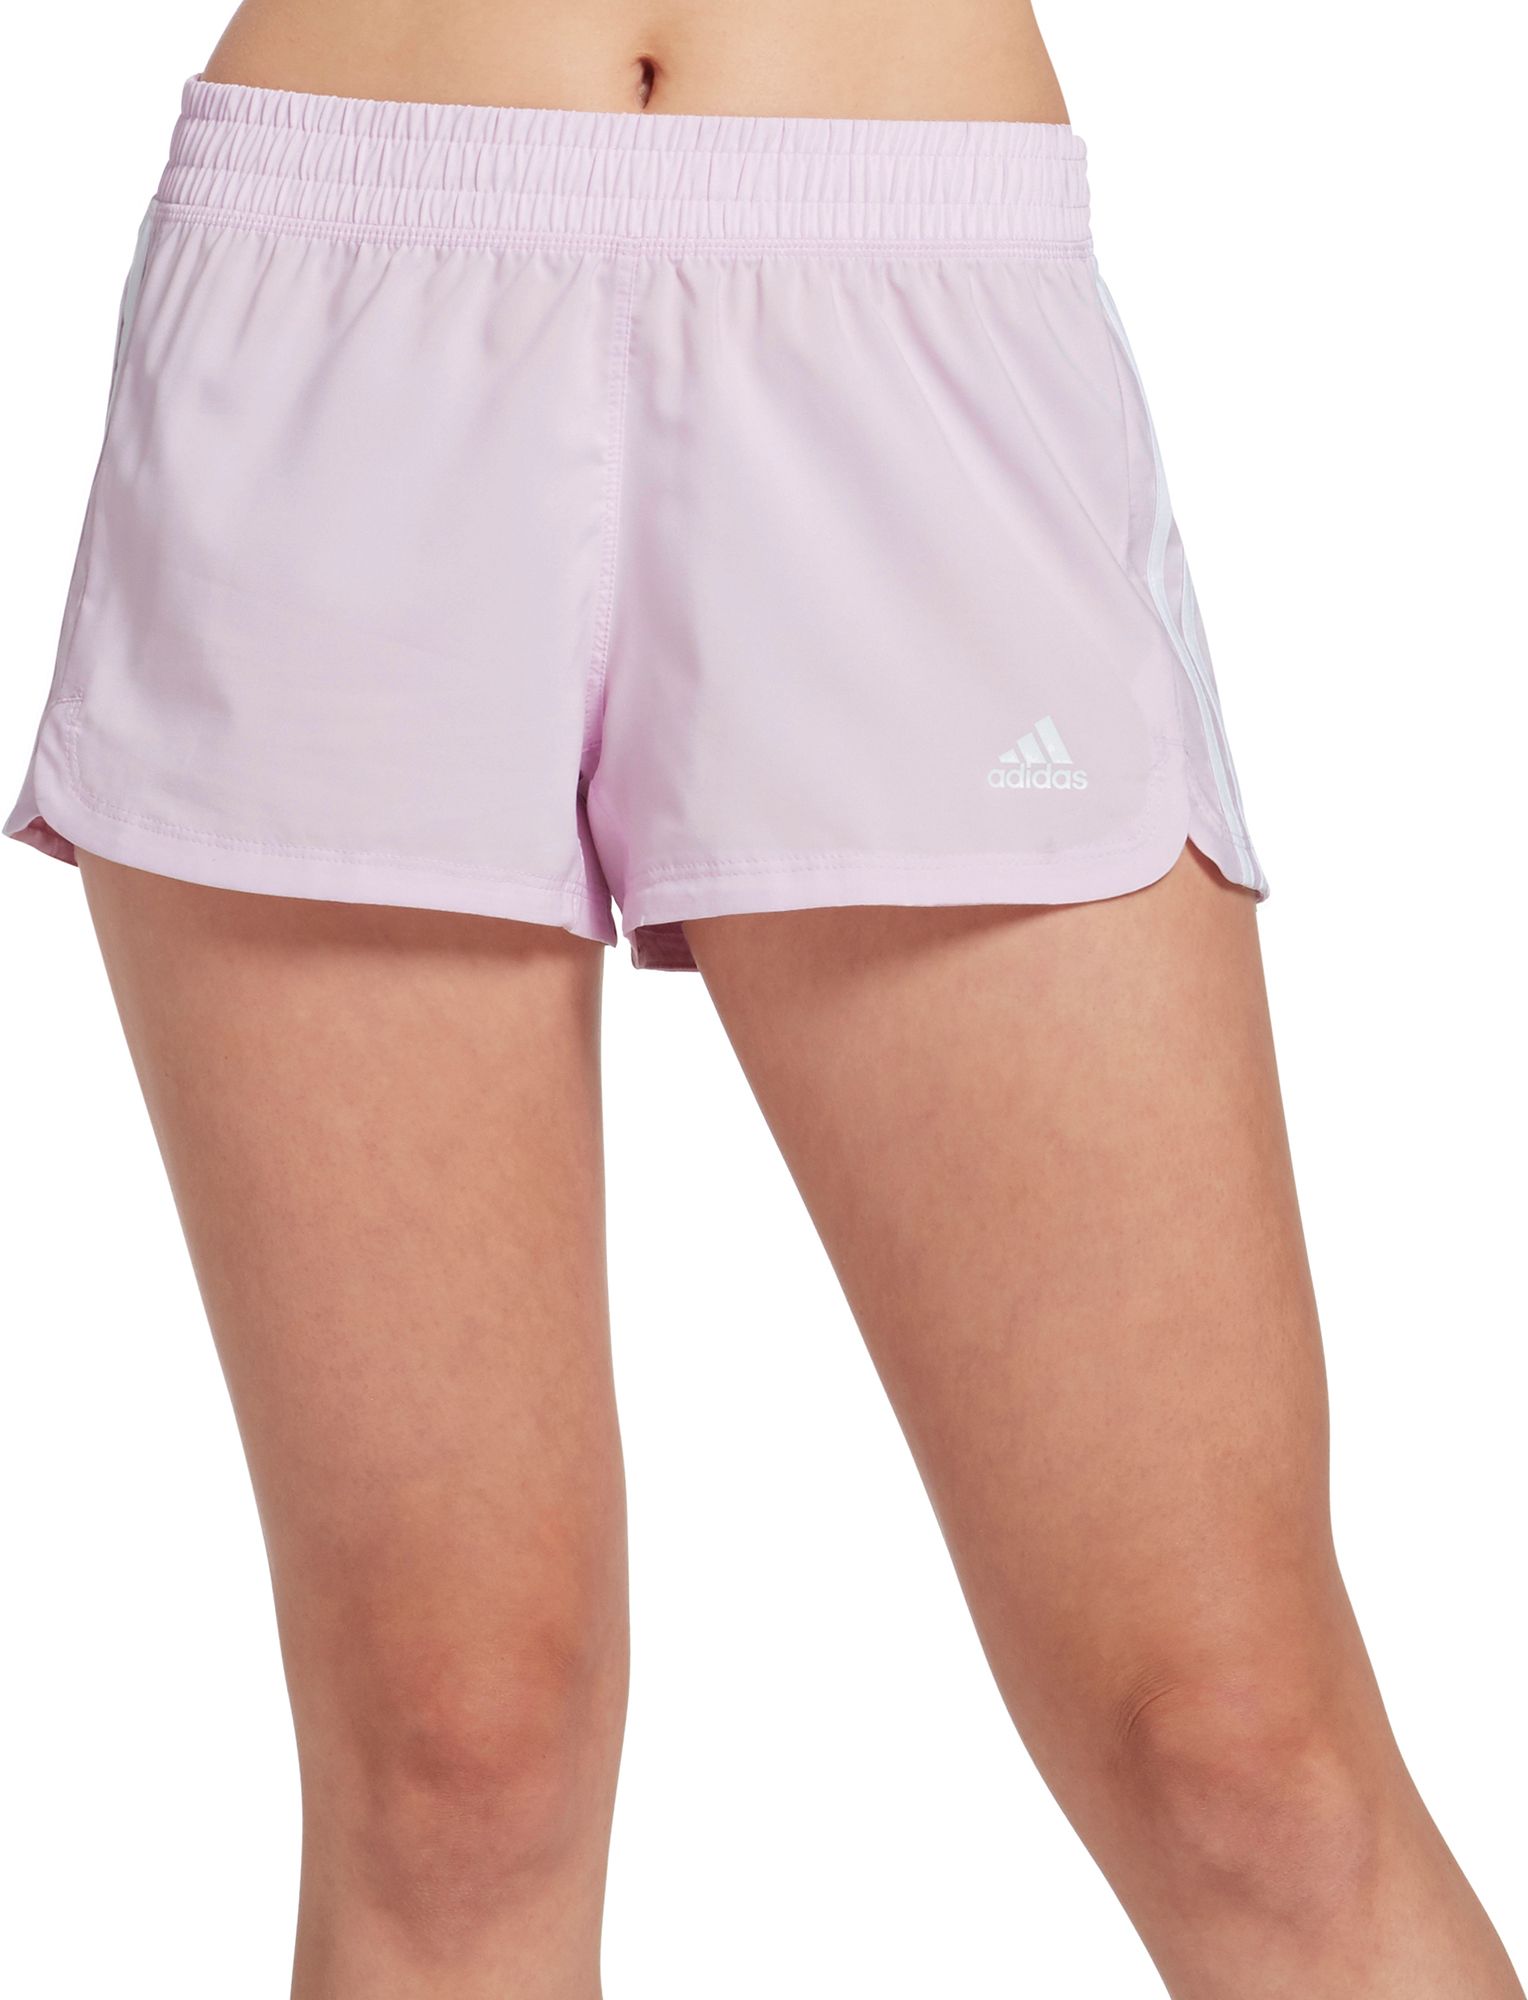 adidas pink shorts womens